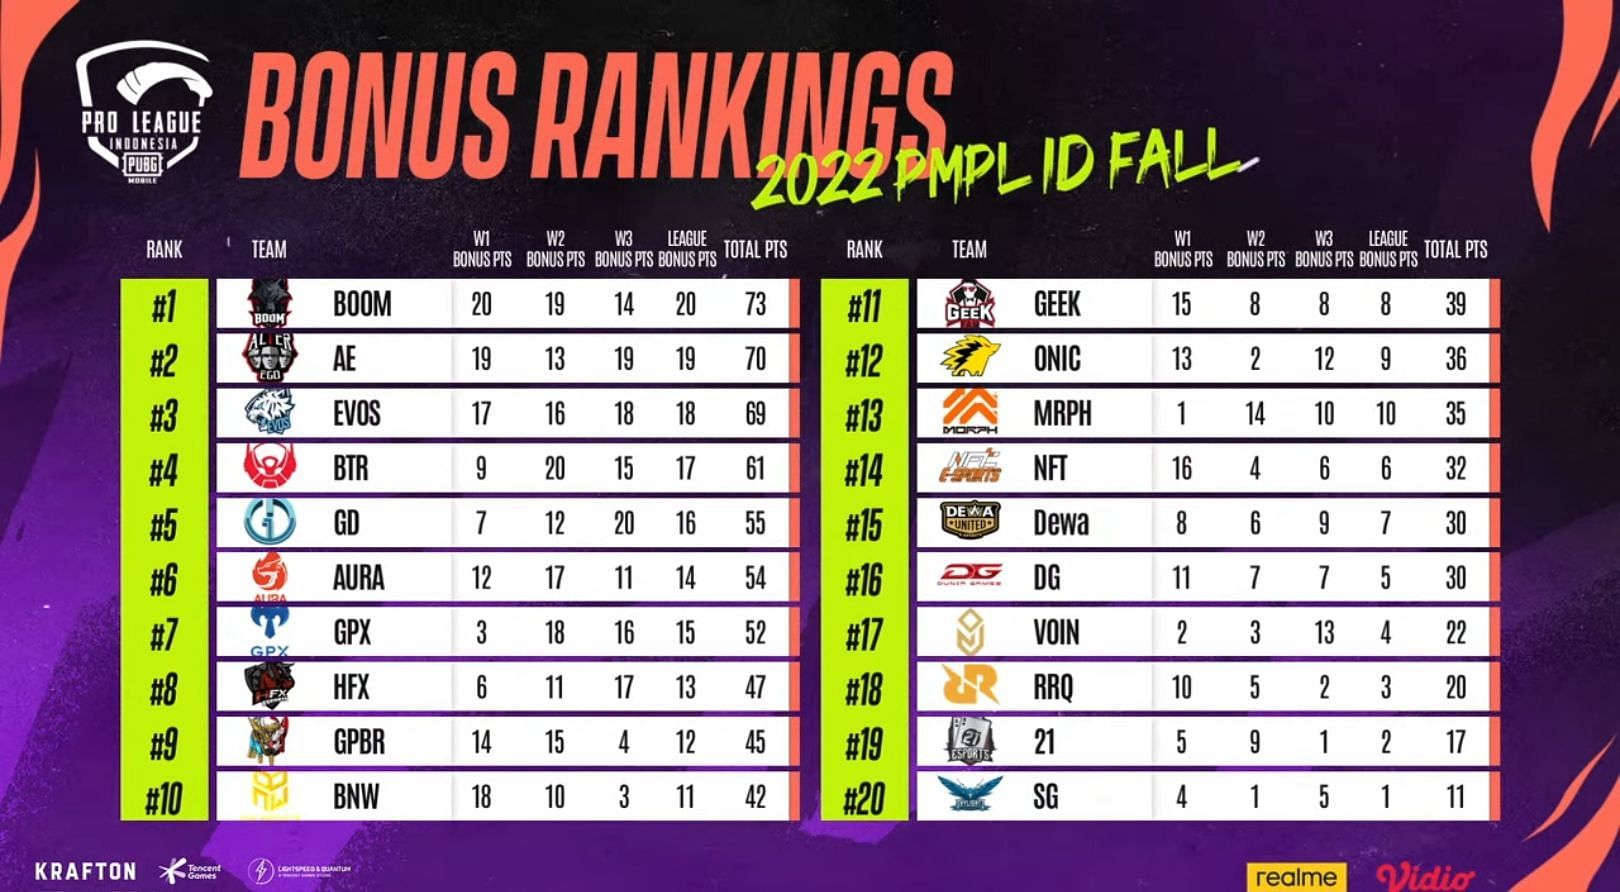 Classement Des Bonus Pmpl Indonesia Fall League (Image Via Pubg Mobile)